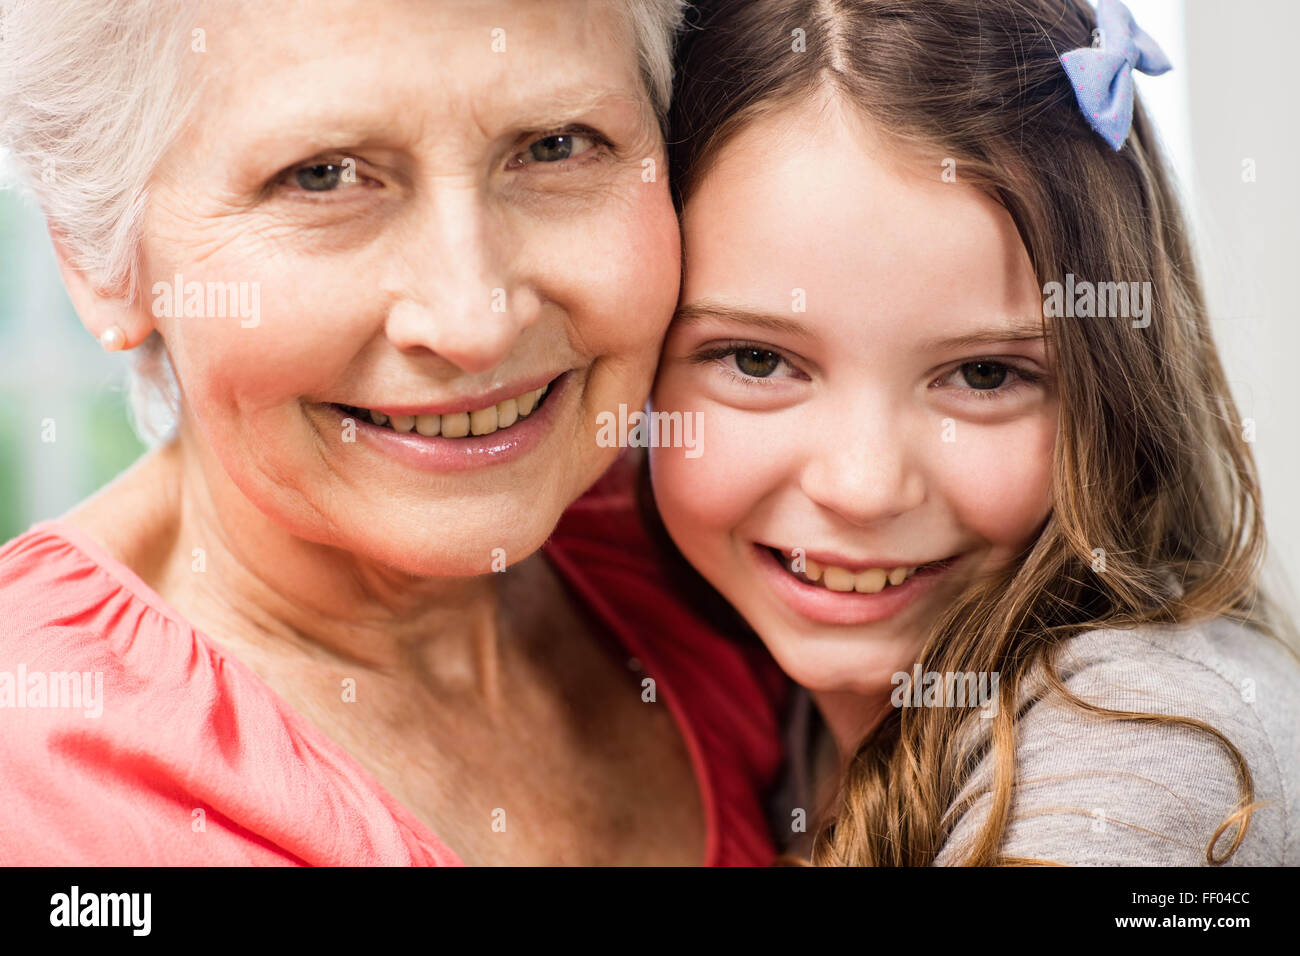 Grand-mère et petite-fille embracing Banque D'Images